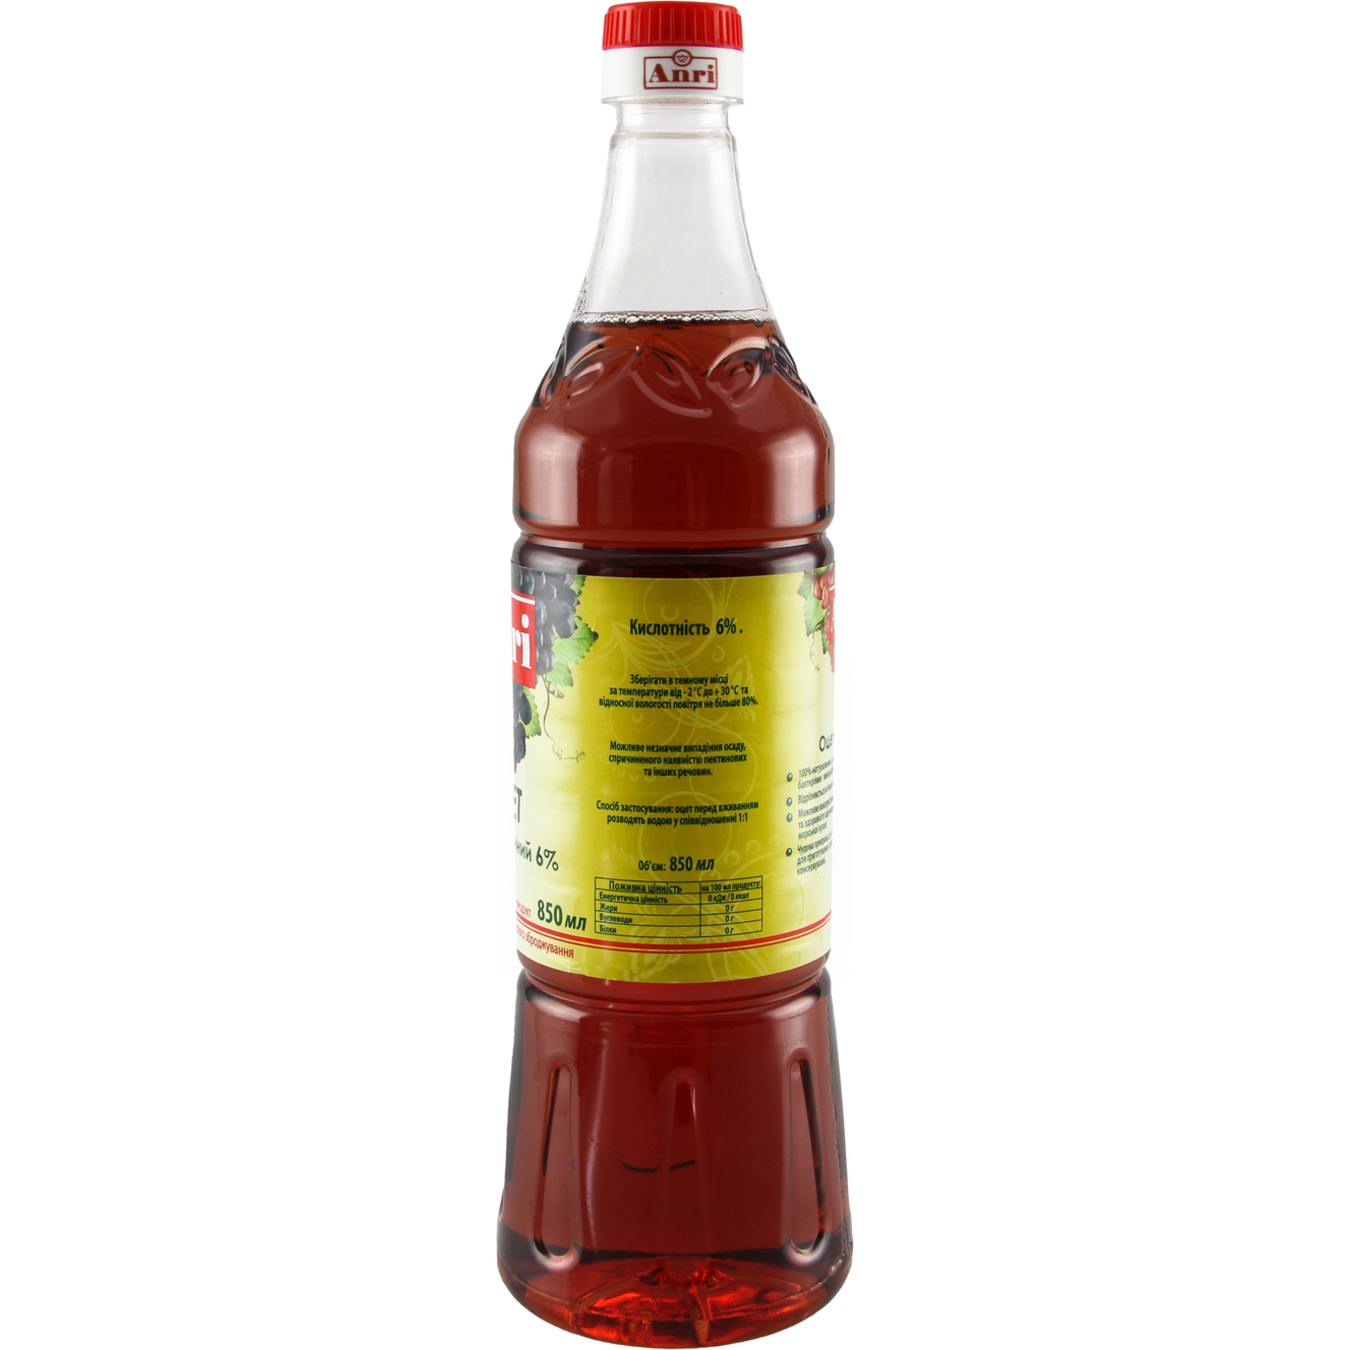 ANRIWine Vinegar 6% 850ml 2